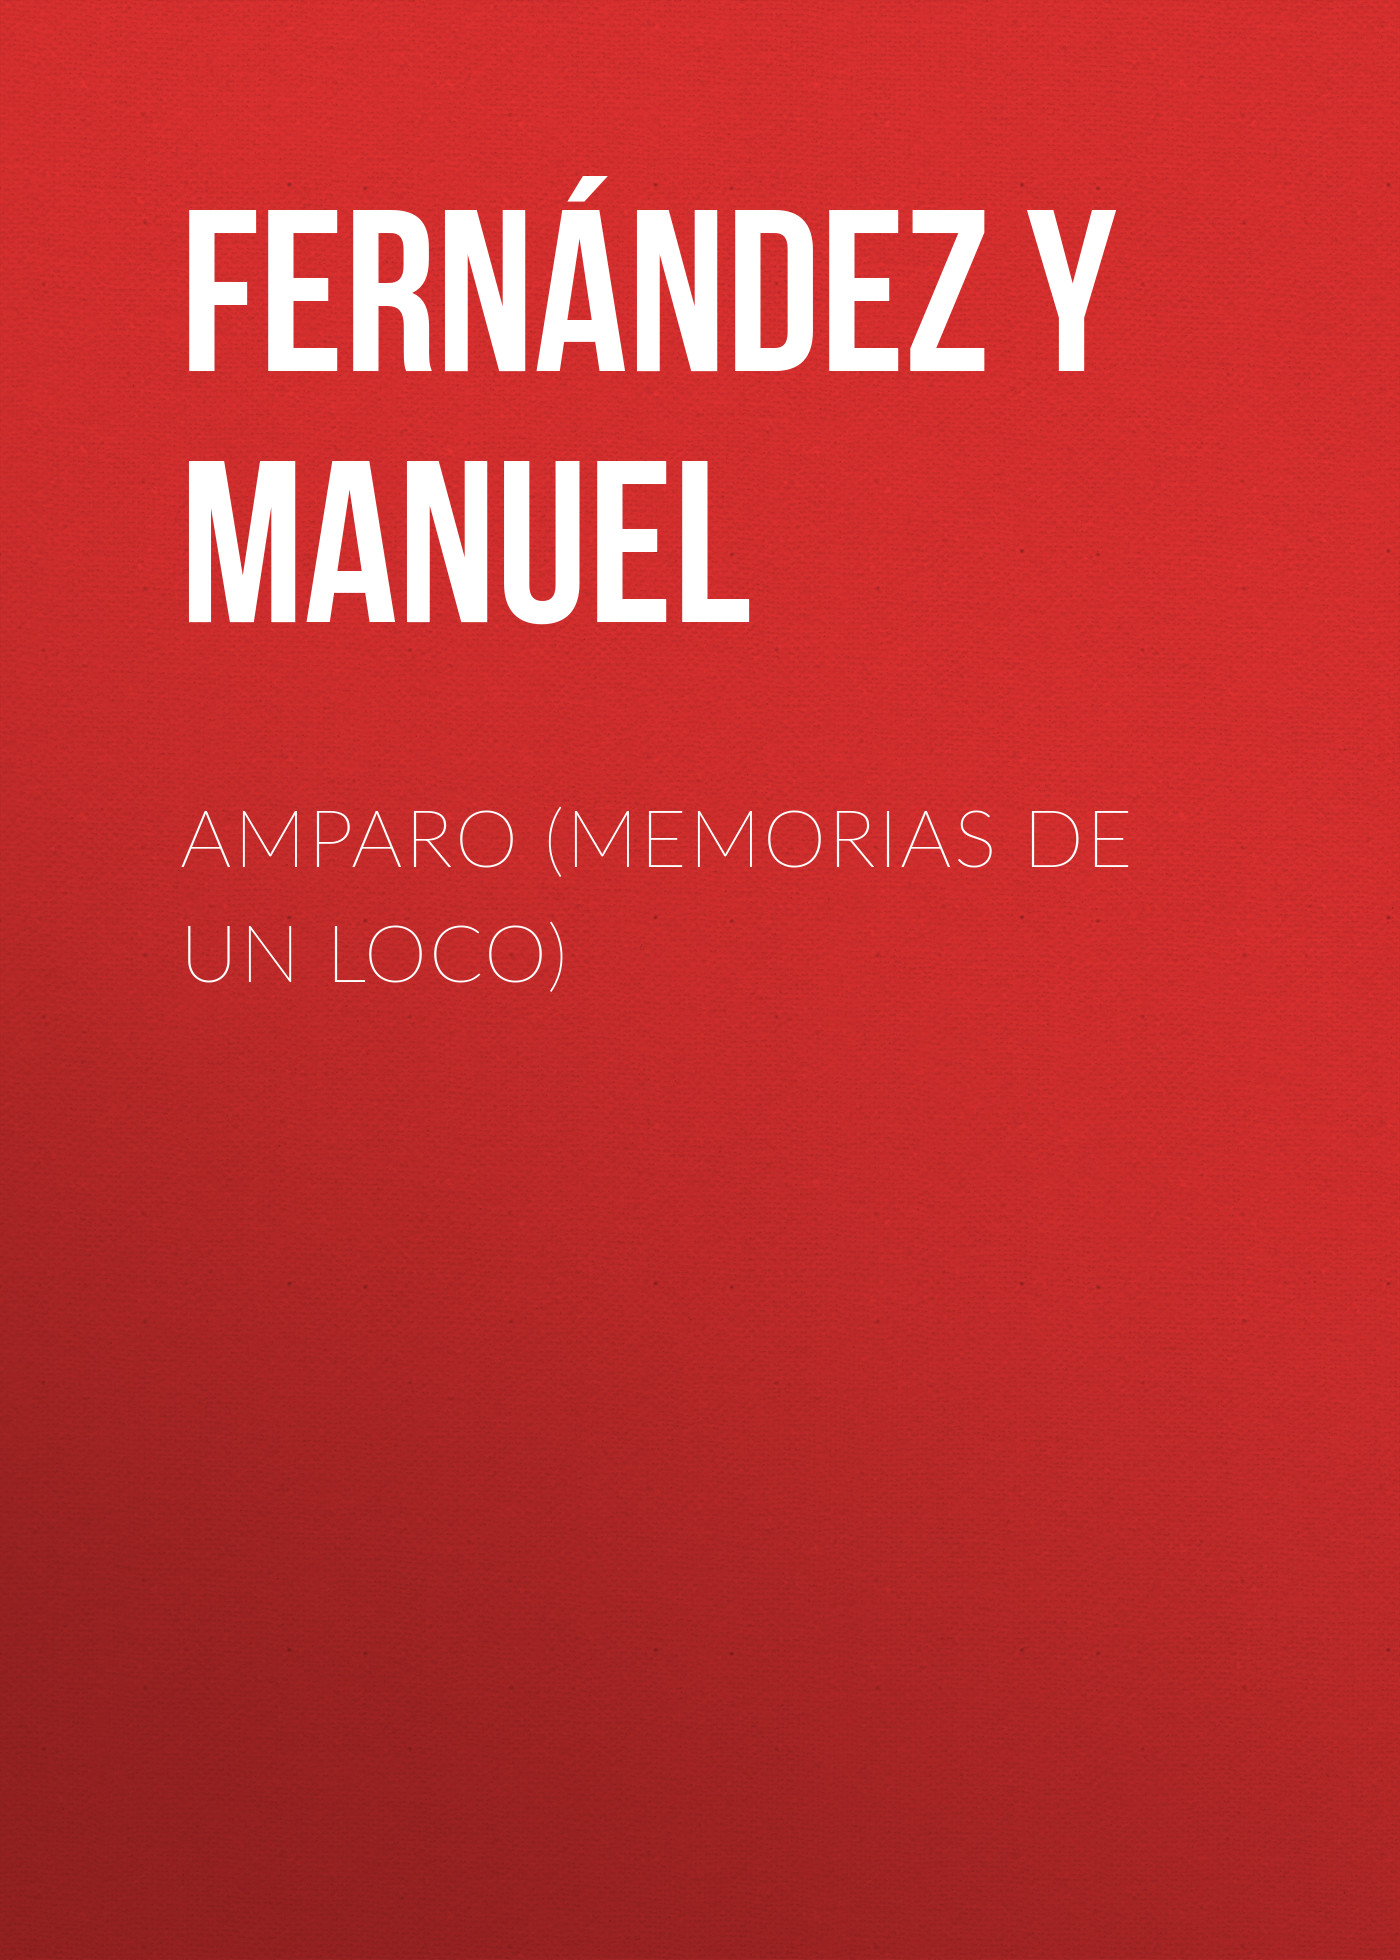 Книга Amparo (Memorias de un loco) из серии , созданная Manuel Fernández y González, может относится к жанру Зарубежная старинная литература, Зарубежная классика, Зарубежная фантастика. Стоимость электронной книги Amparo (Memorias de un loco) с идентификатором 24728377 составляет 0 руб.